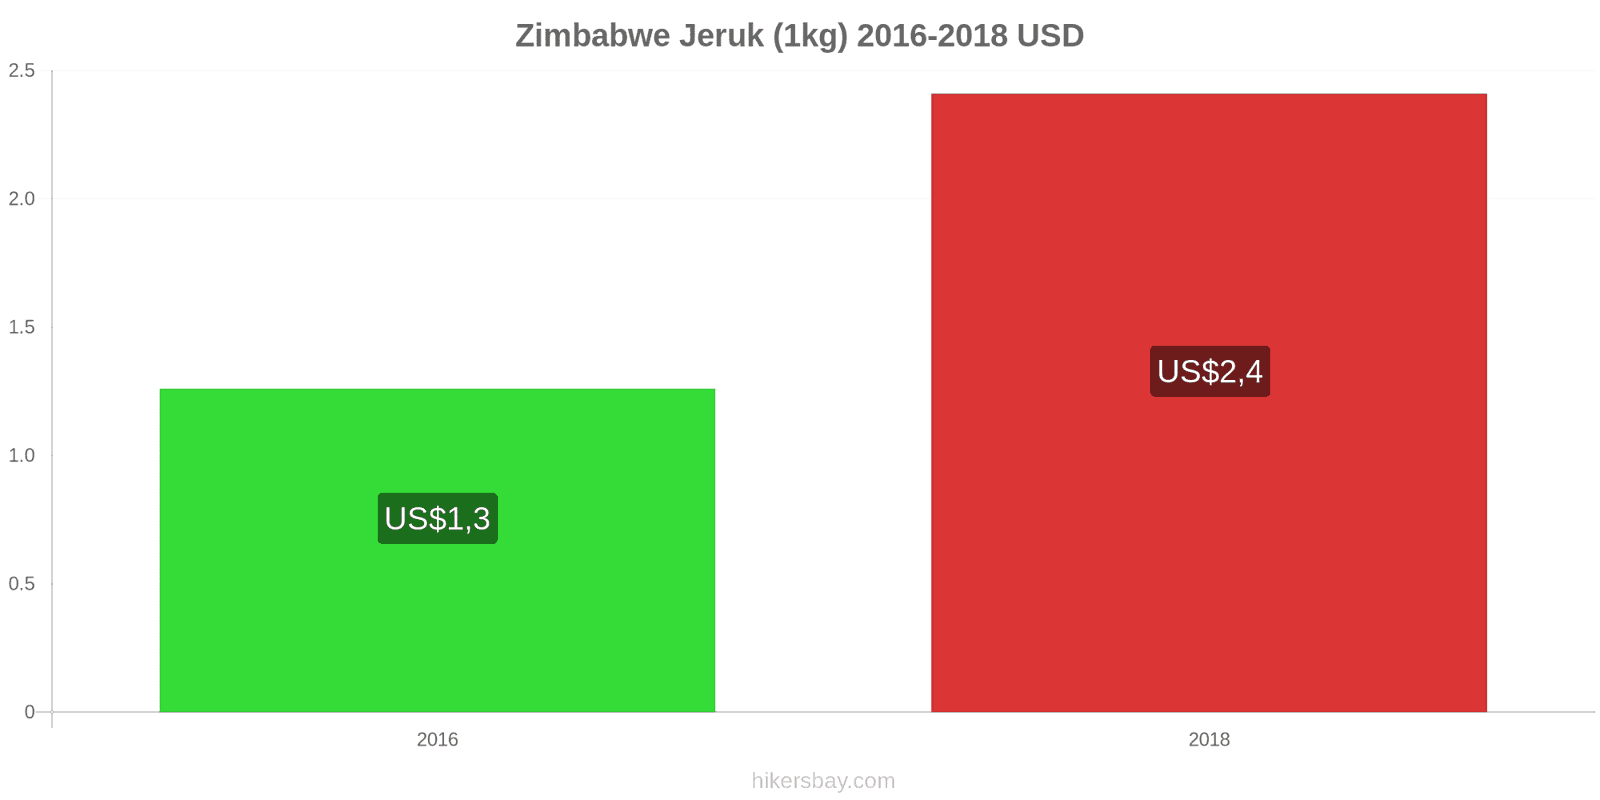 Zimbabwe perubahan harga Jeruk (1kg) hikersbay.com